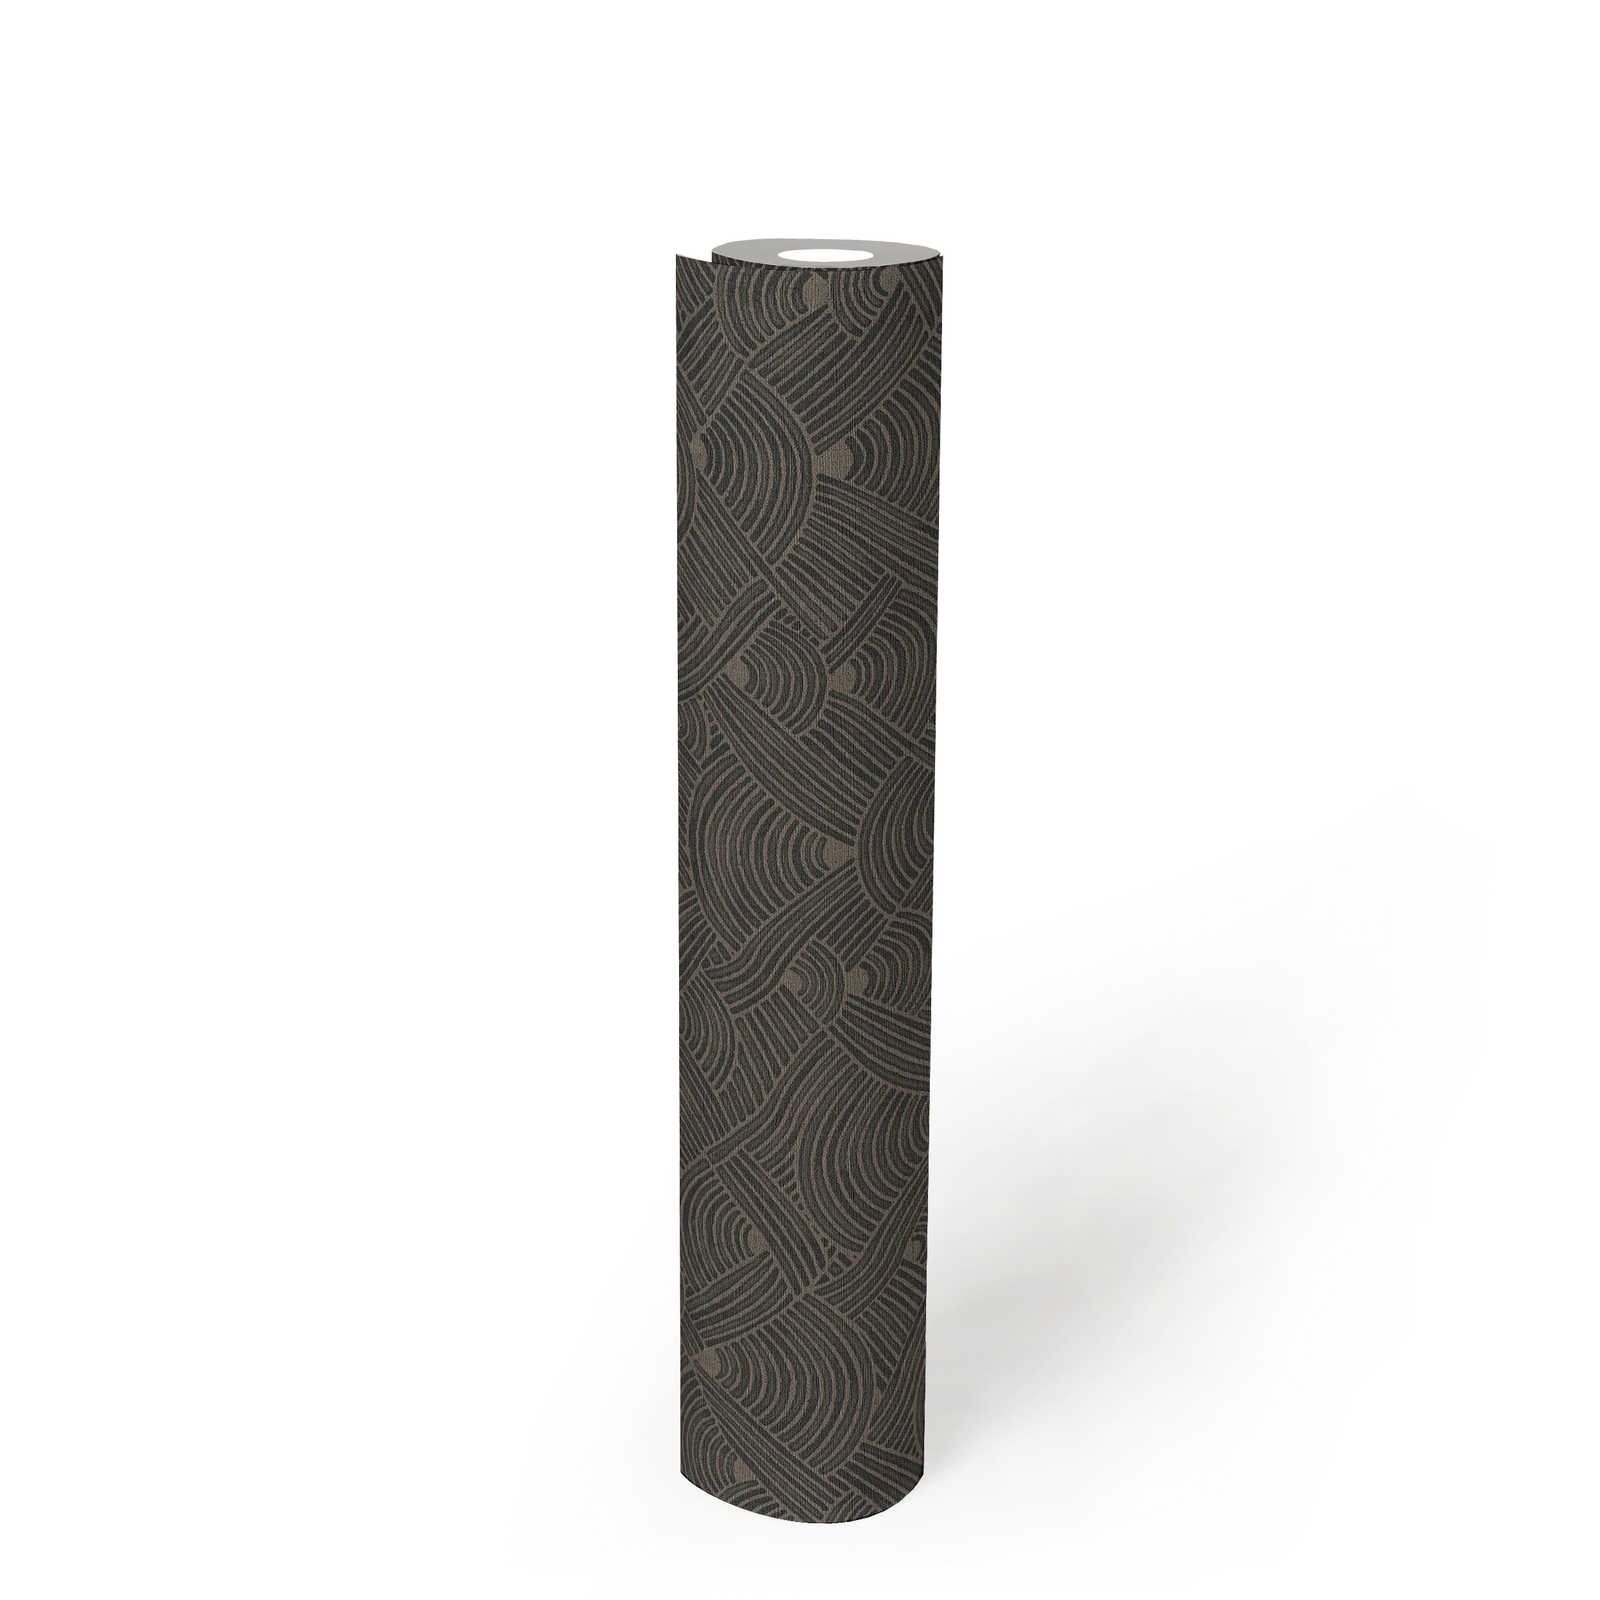             Papel pintado oscuro motivo trenzado con diseño de estructura - gris, negro
        